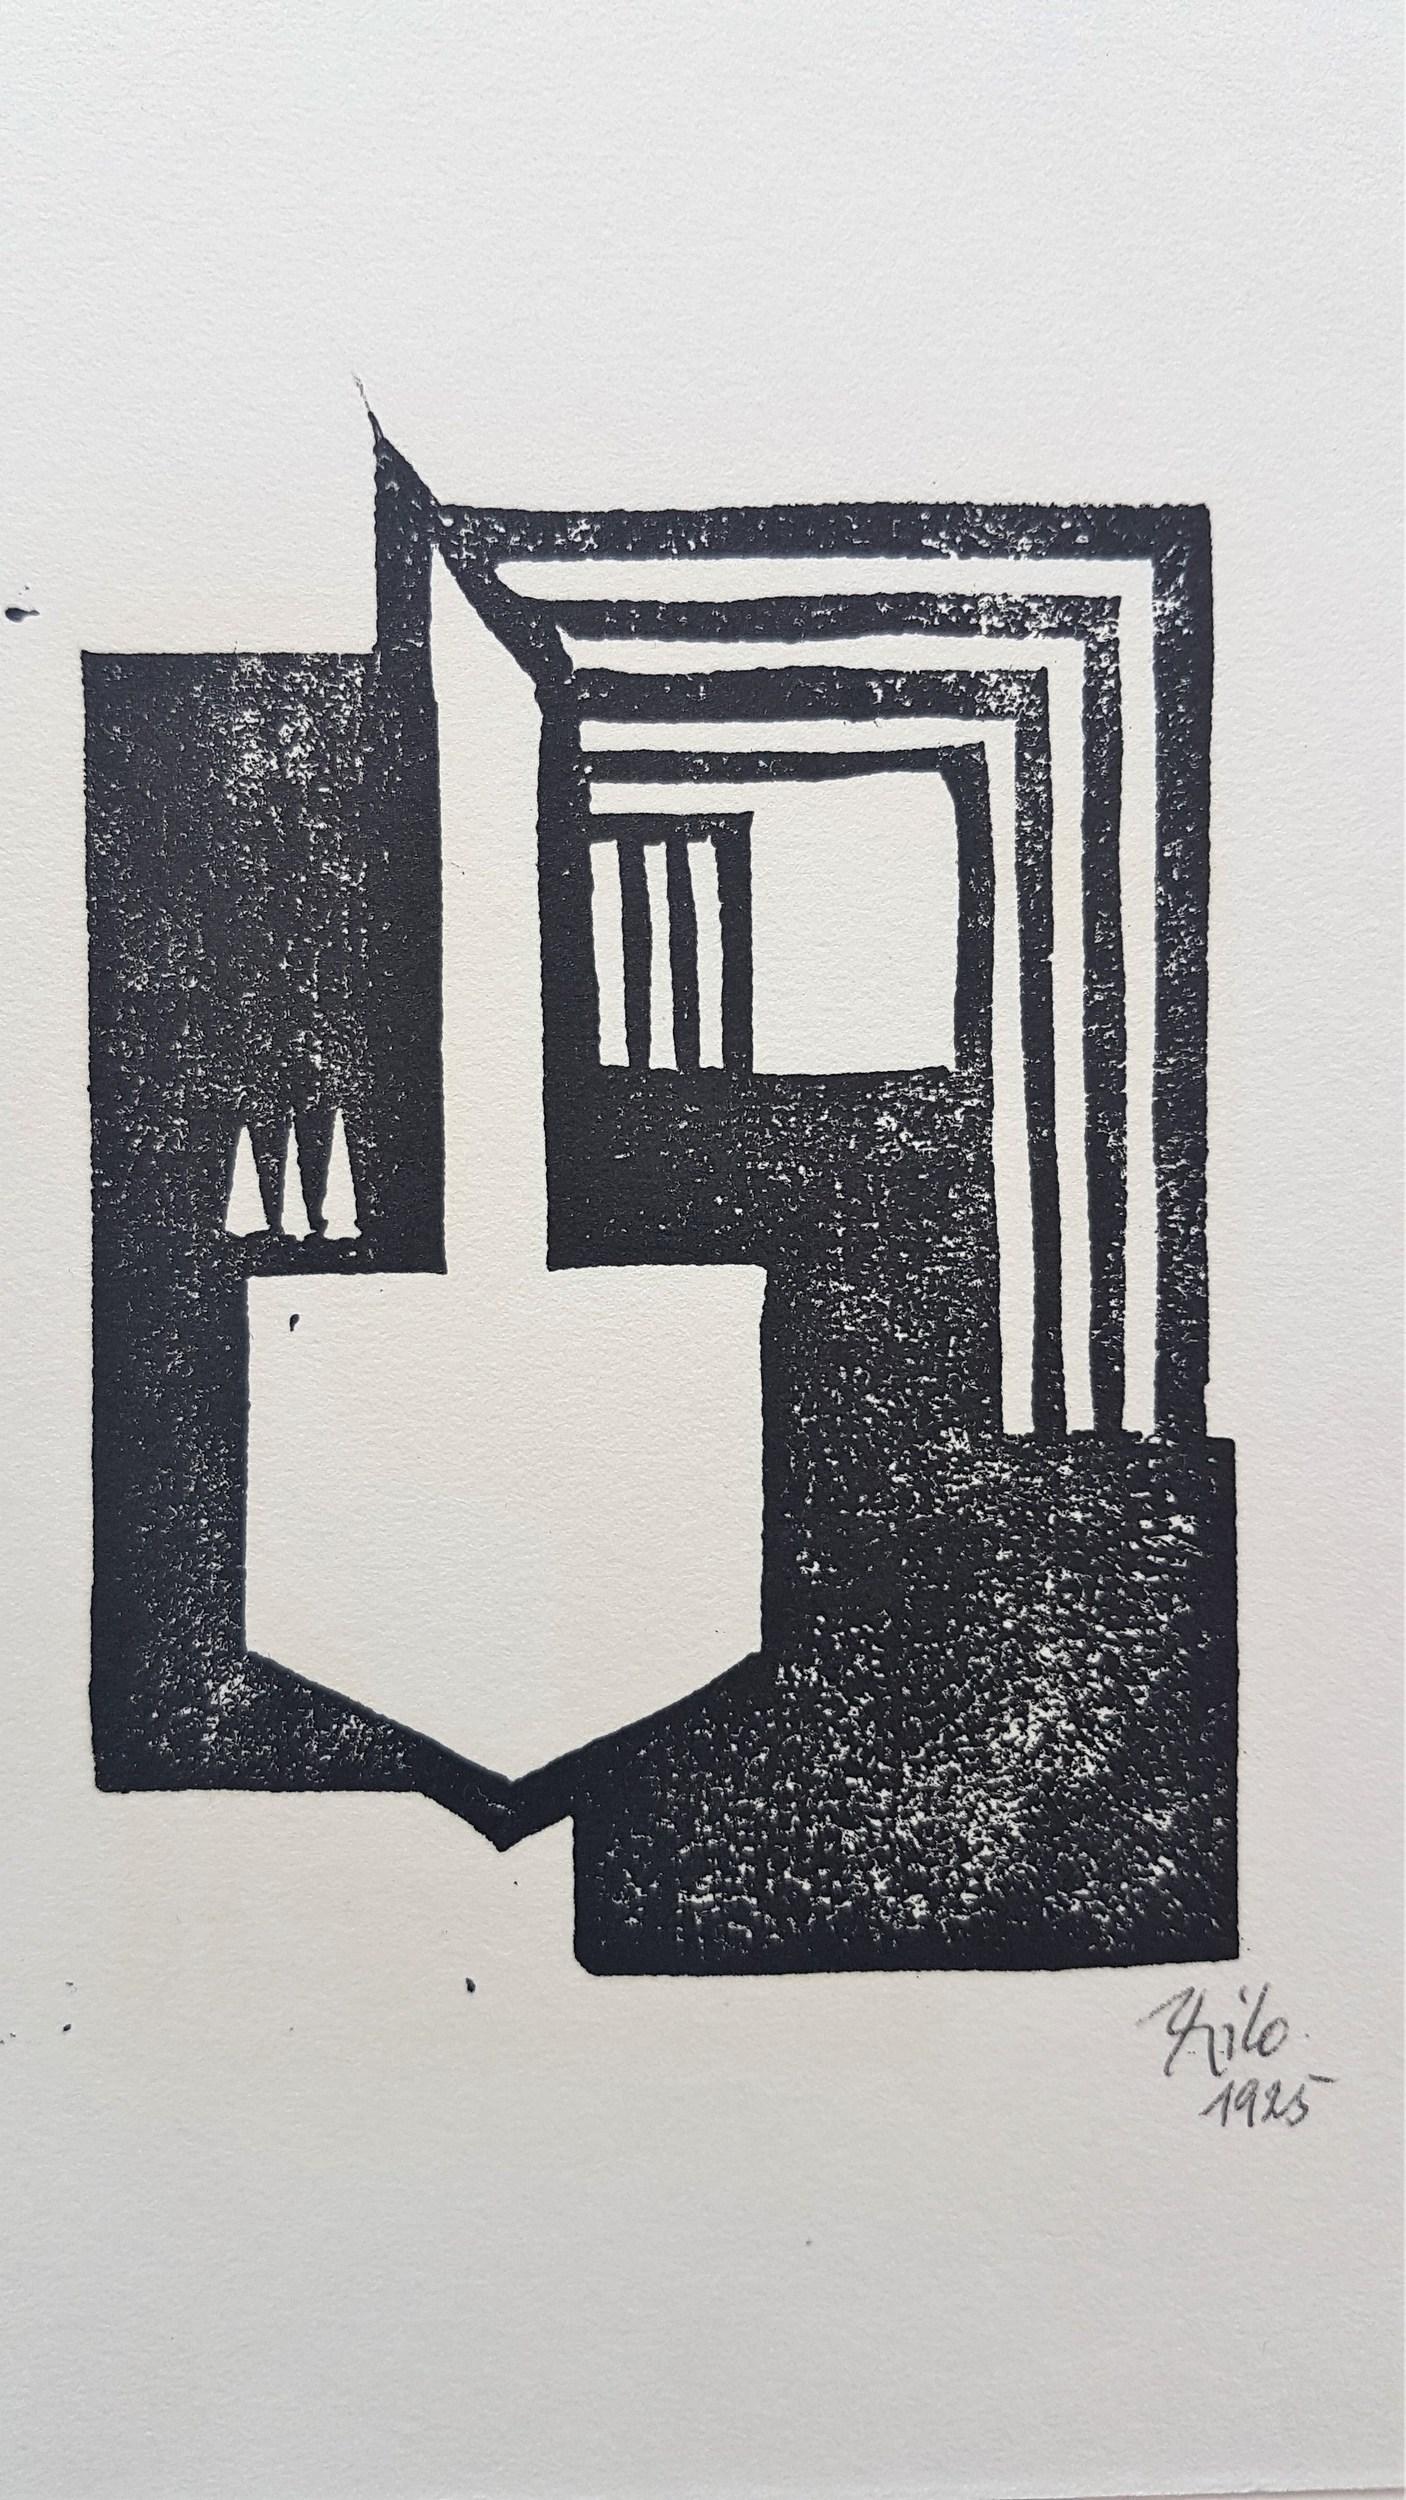 Composition géométrique abstraite, constructivisme et art concrète - Print de Thilo Maatsch